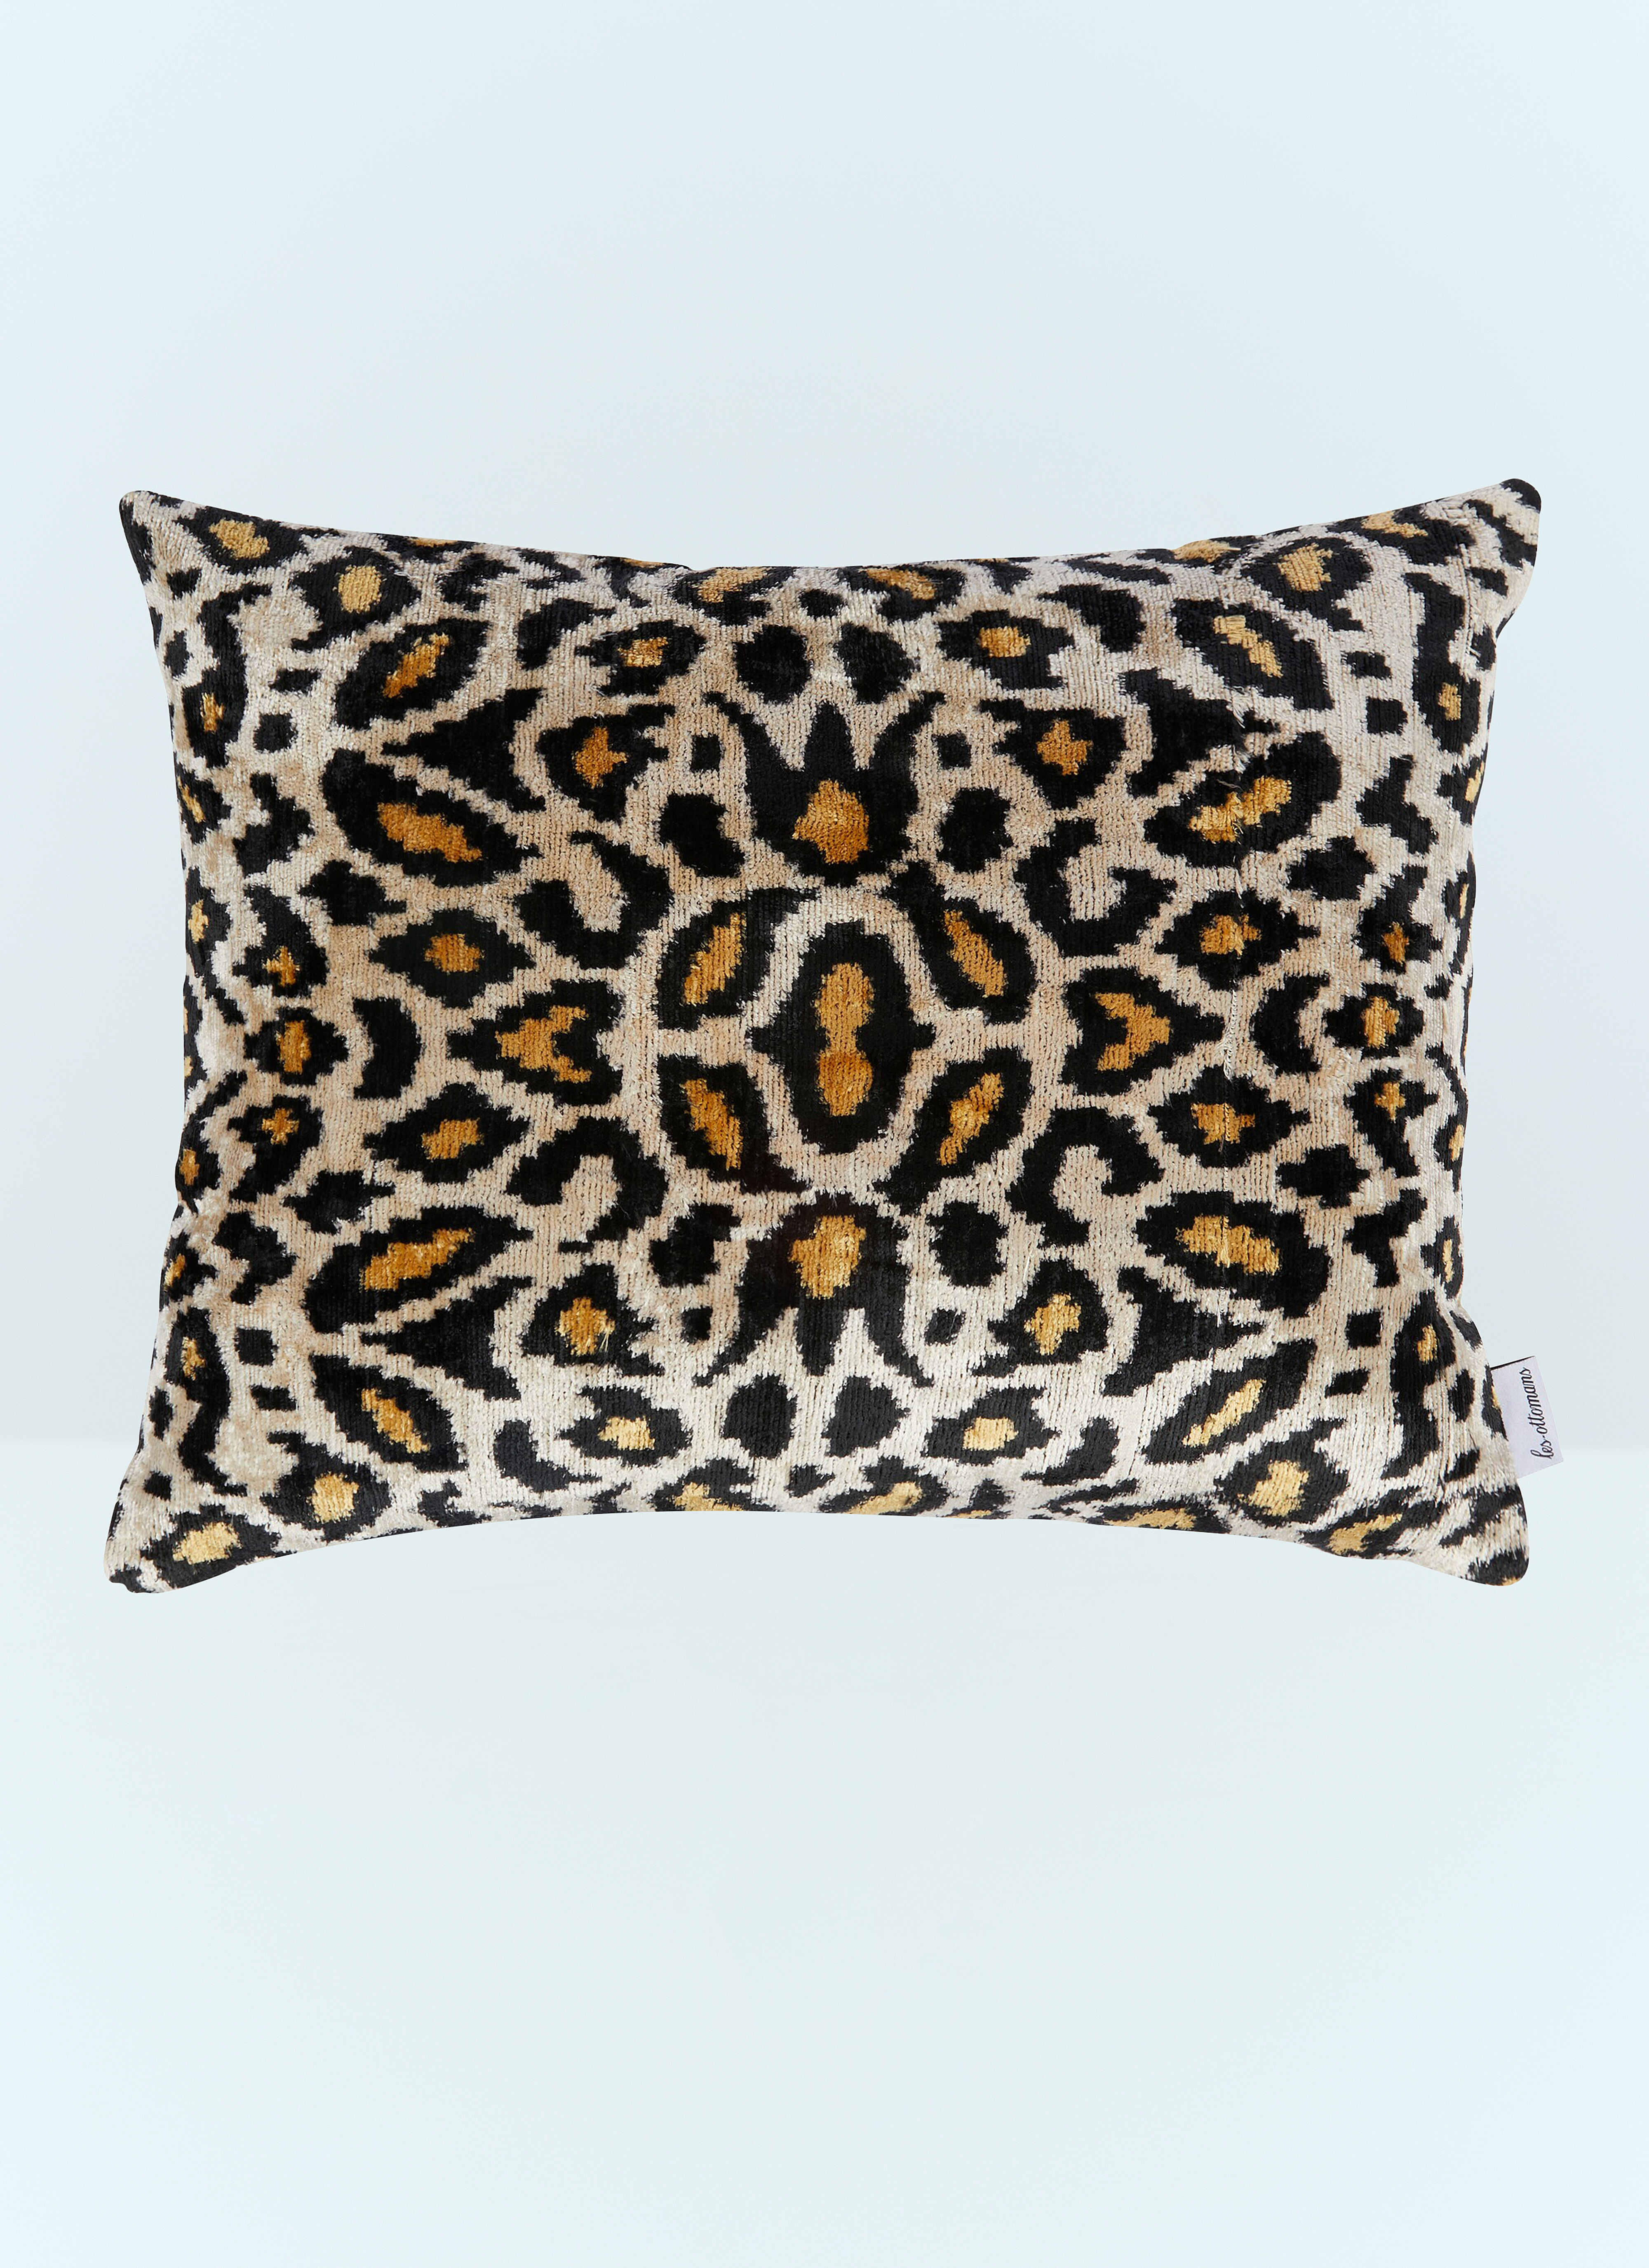 Seletti Leopard Print Velvet Cushion Multicolour wps0691129